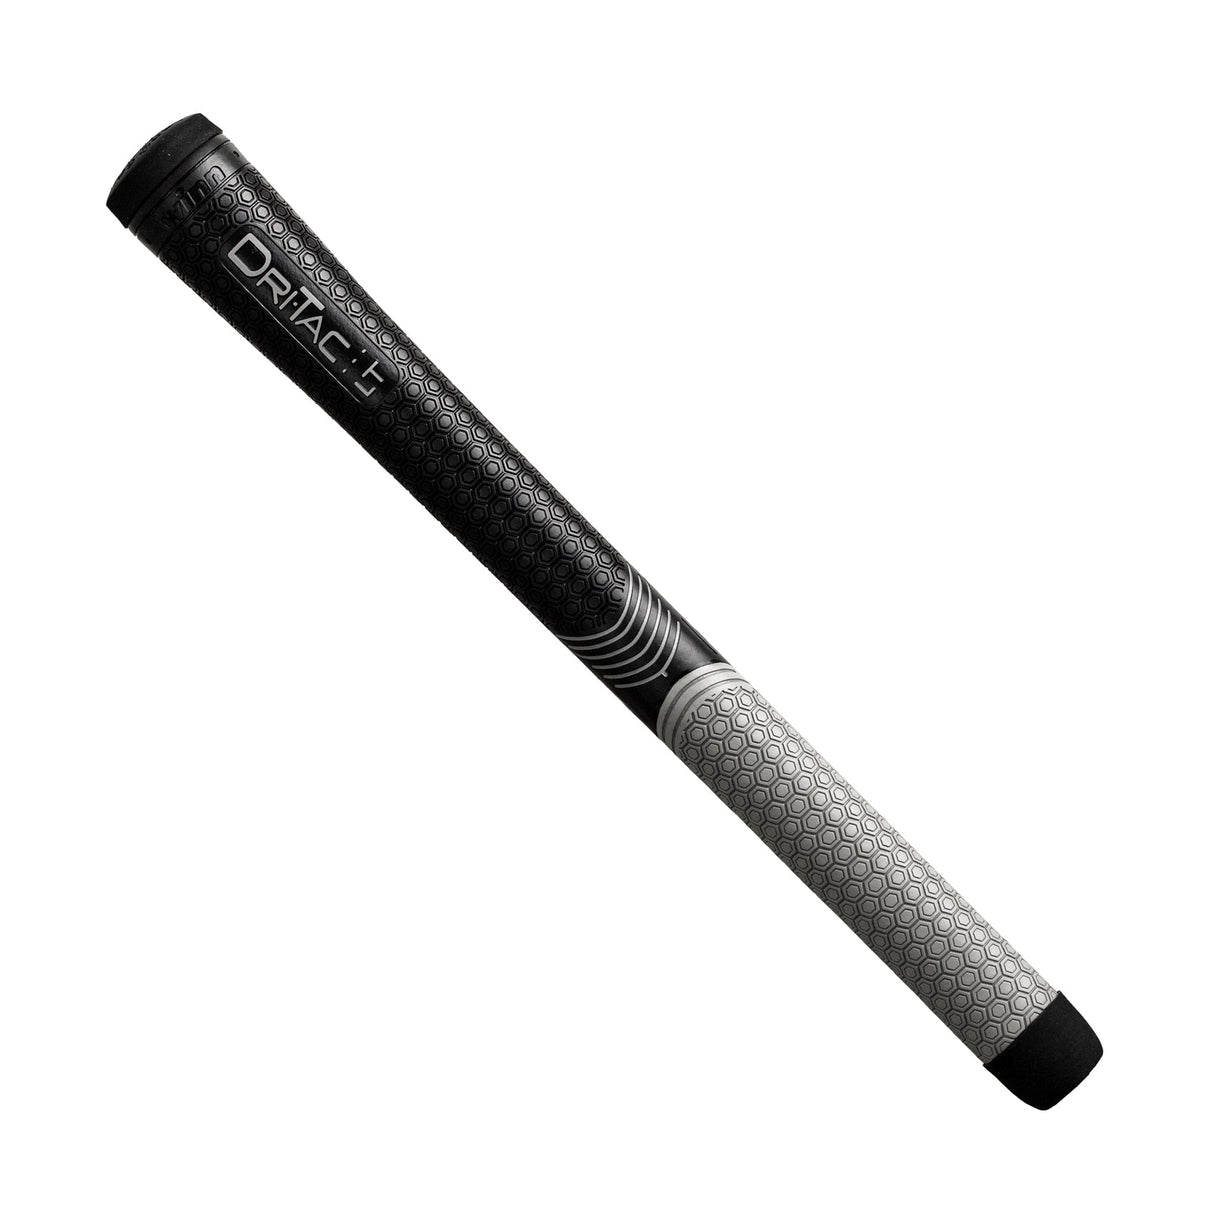 Winn Dri-Tac LT (Less Taper) Standard (13pcs + Golf Grip Kit)